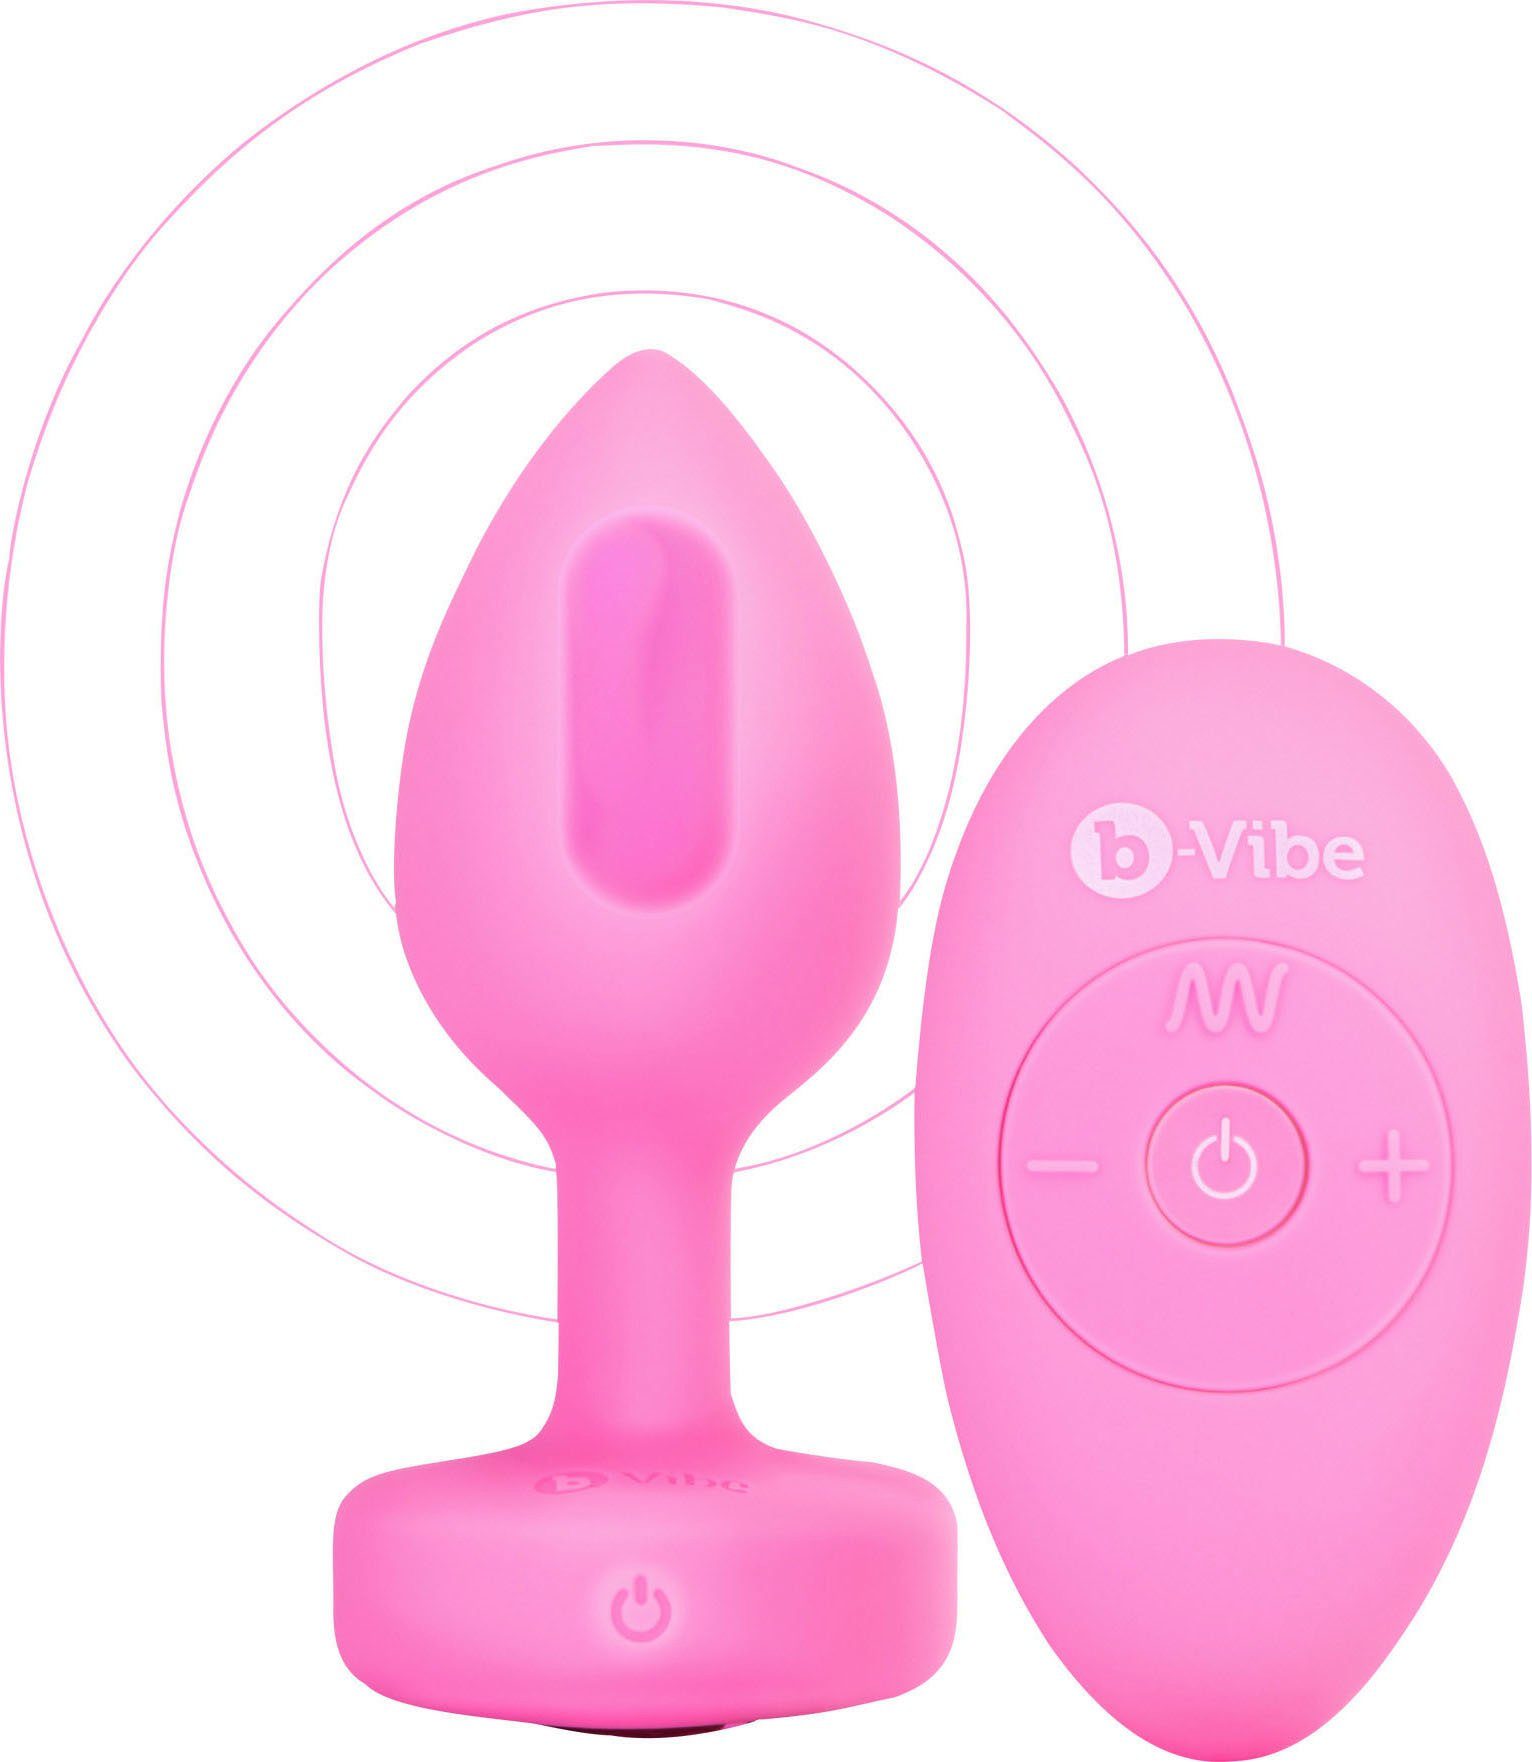 b-Vibe Analplug pink